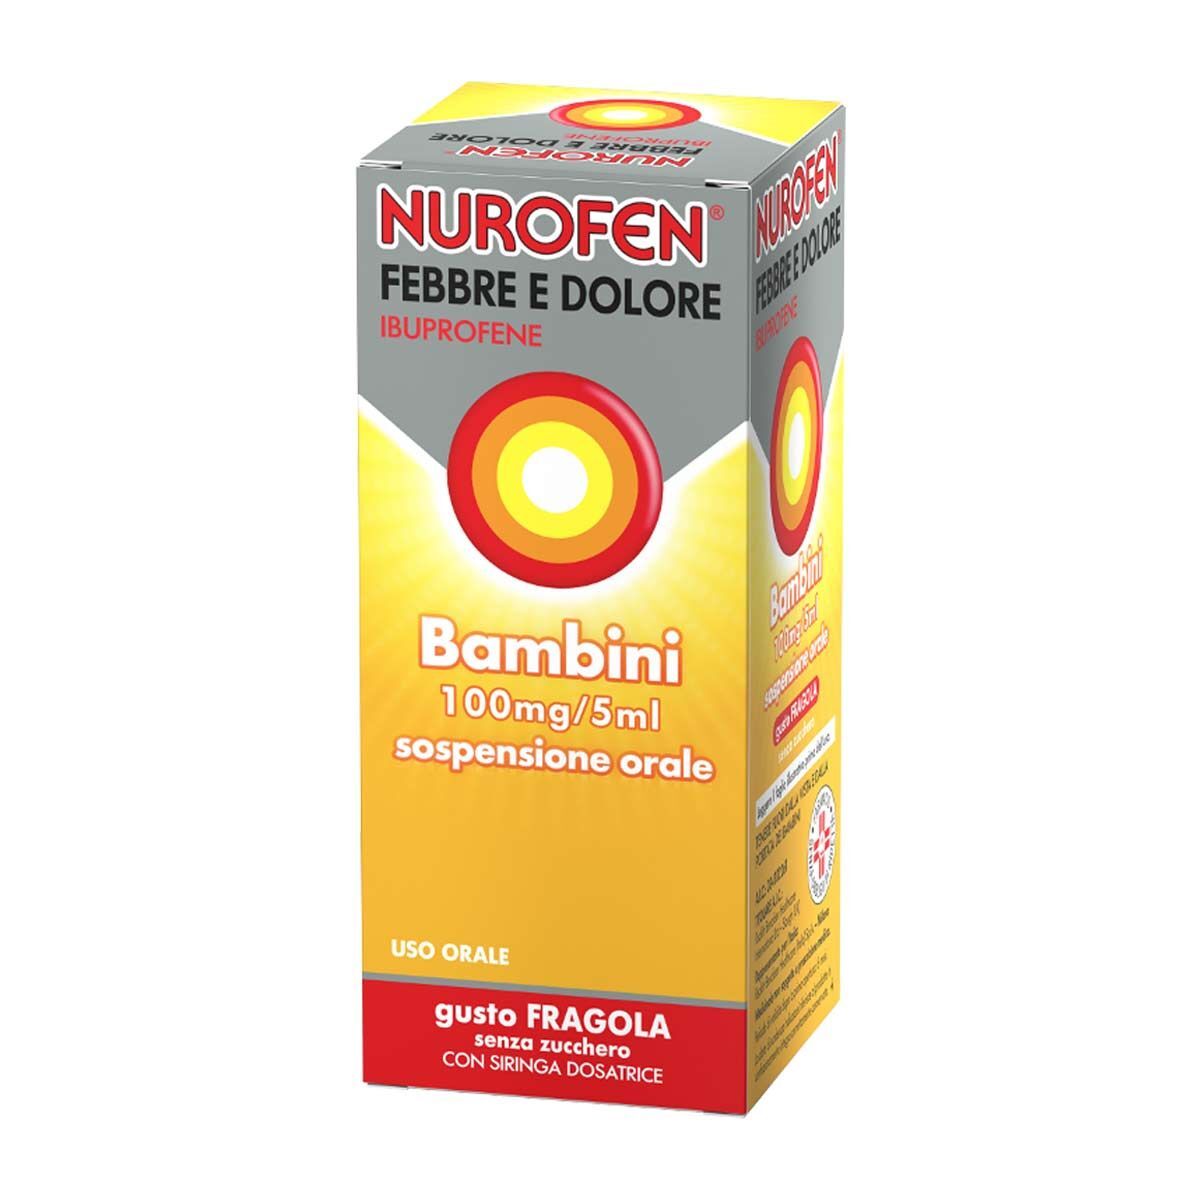 nurofen febbre dolore sciroppo ibuprofene 100mg/5ml gusto fragola 150ml